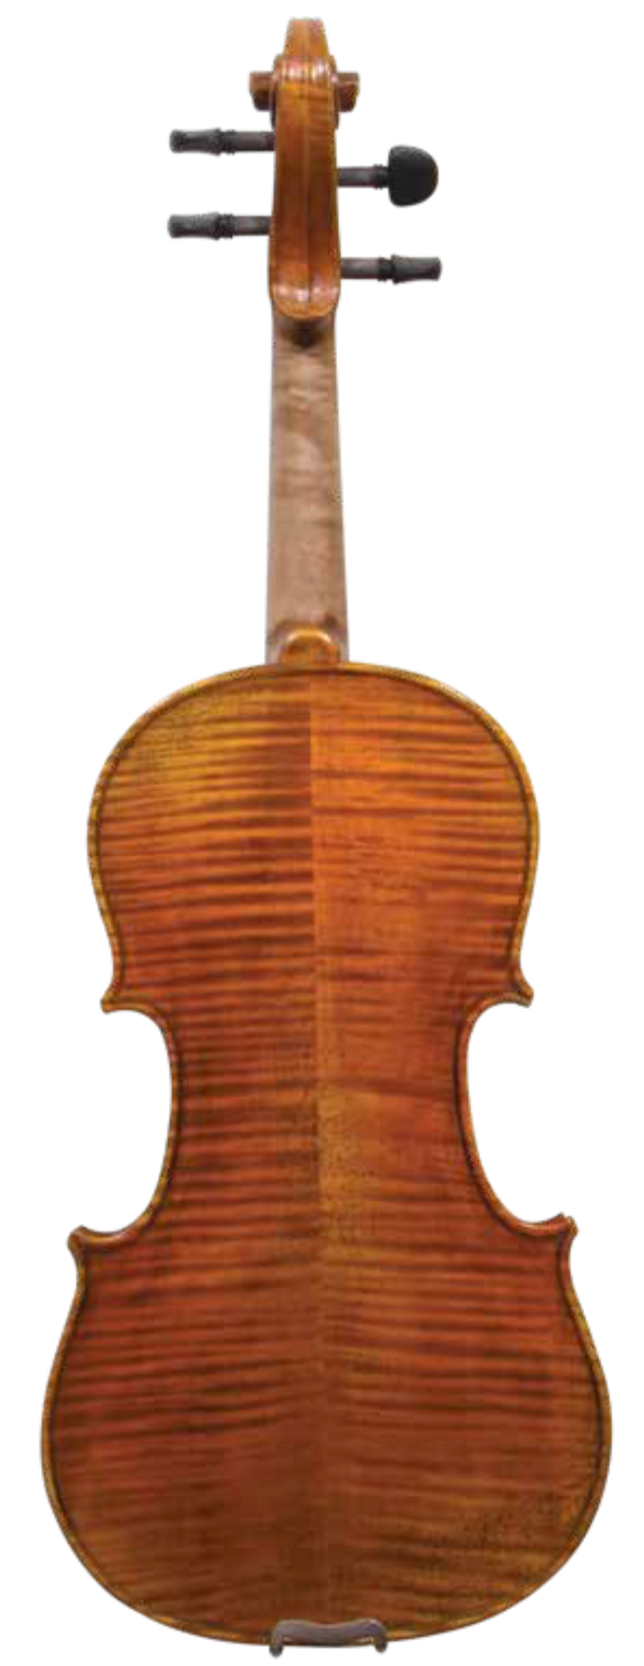 Maple Leaf Strings 